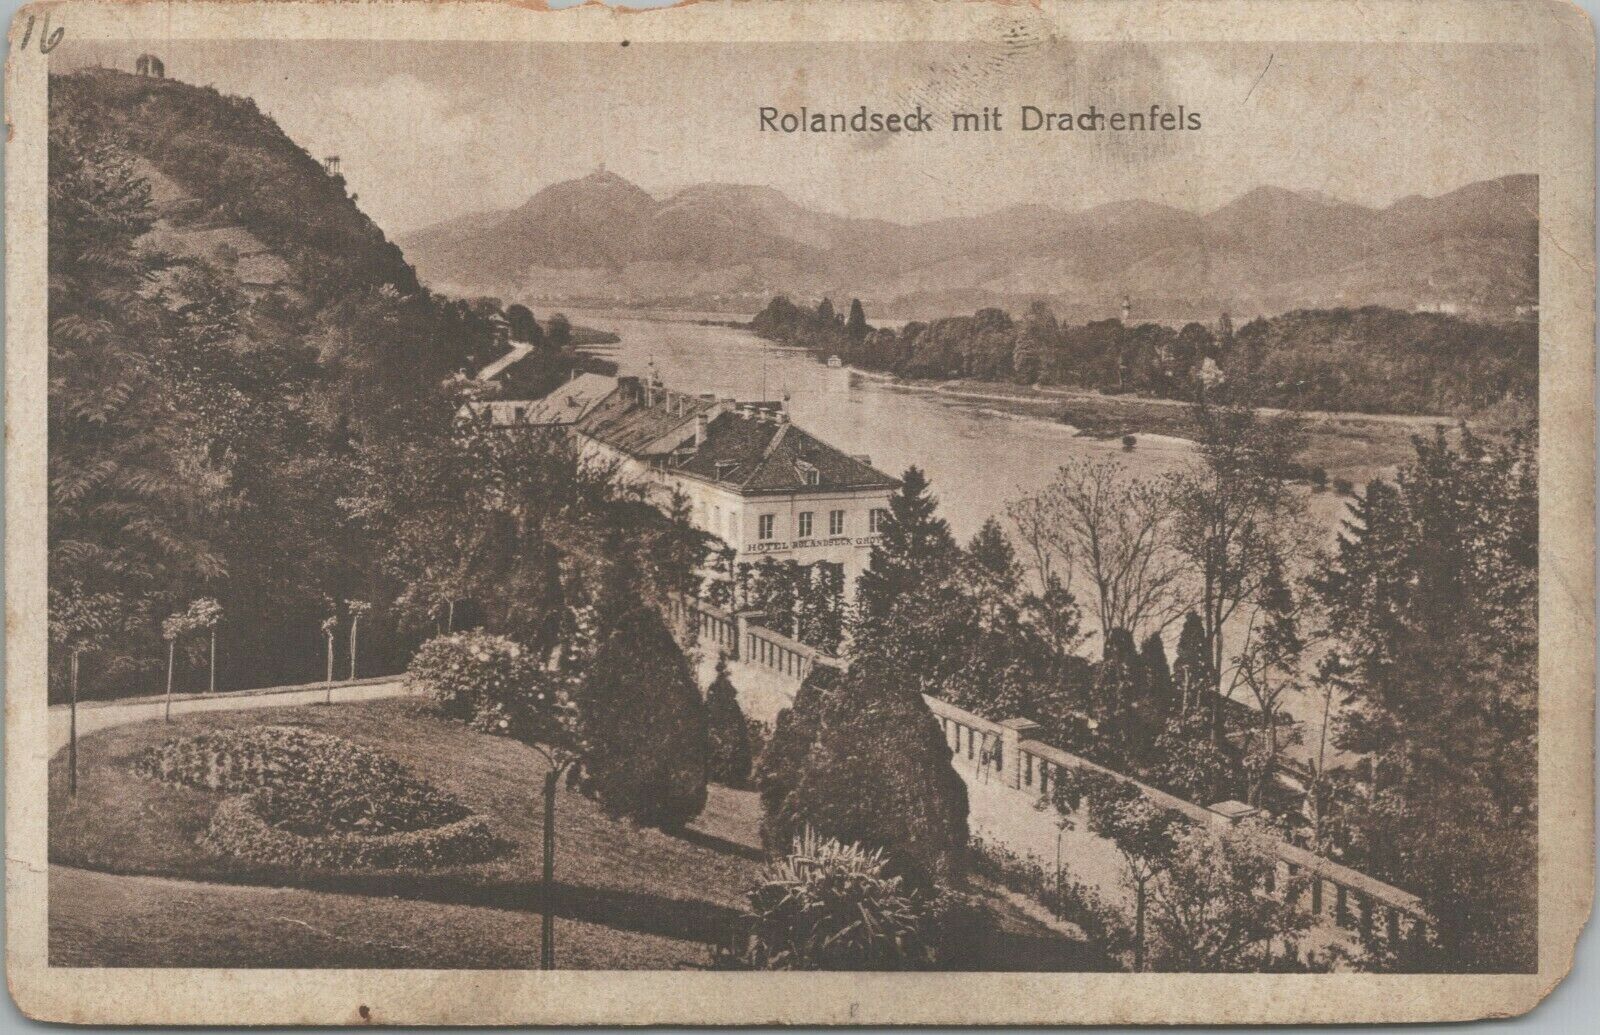 Rolandseck mit Drachenfels Germany Deutschland CPA Antique Postcard - Unposted